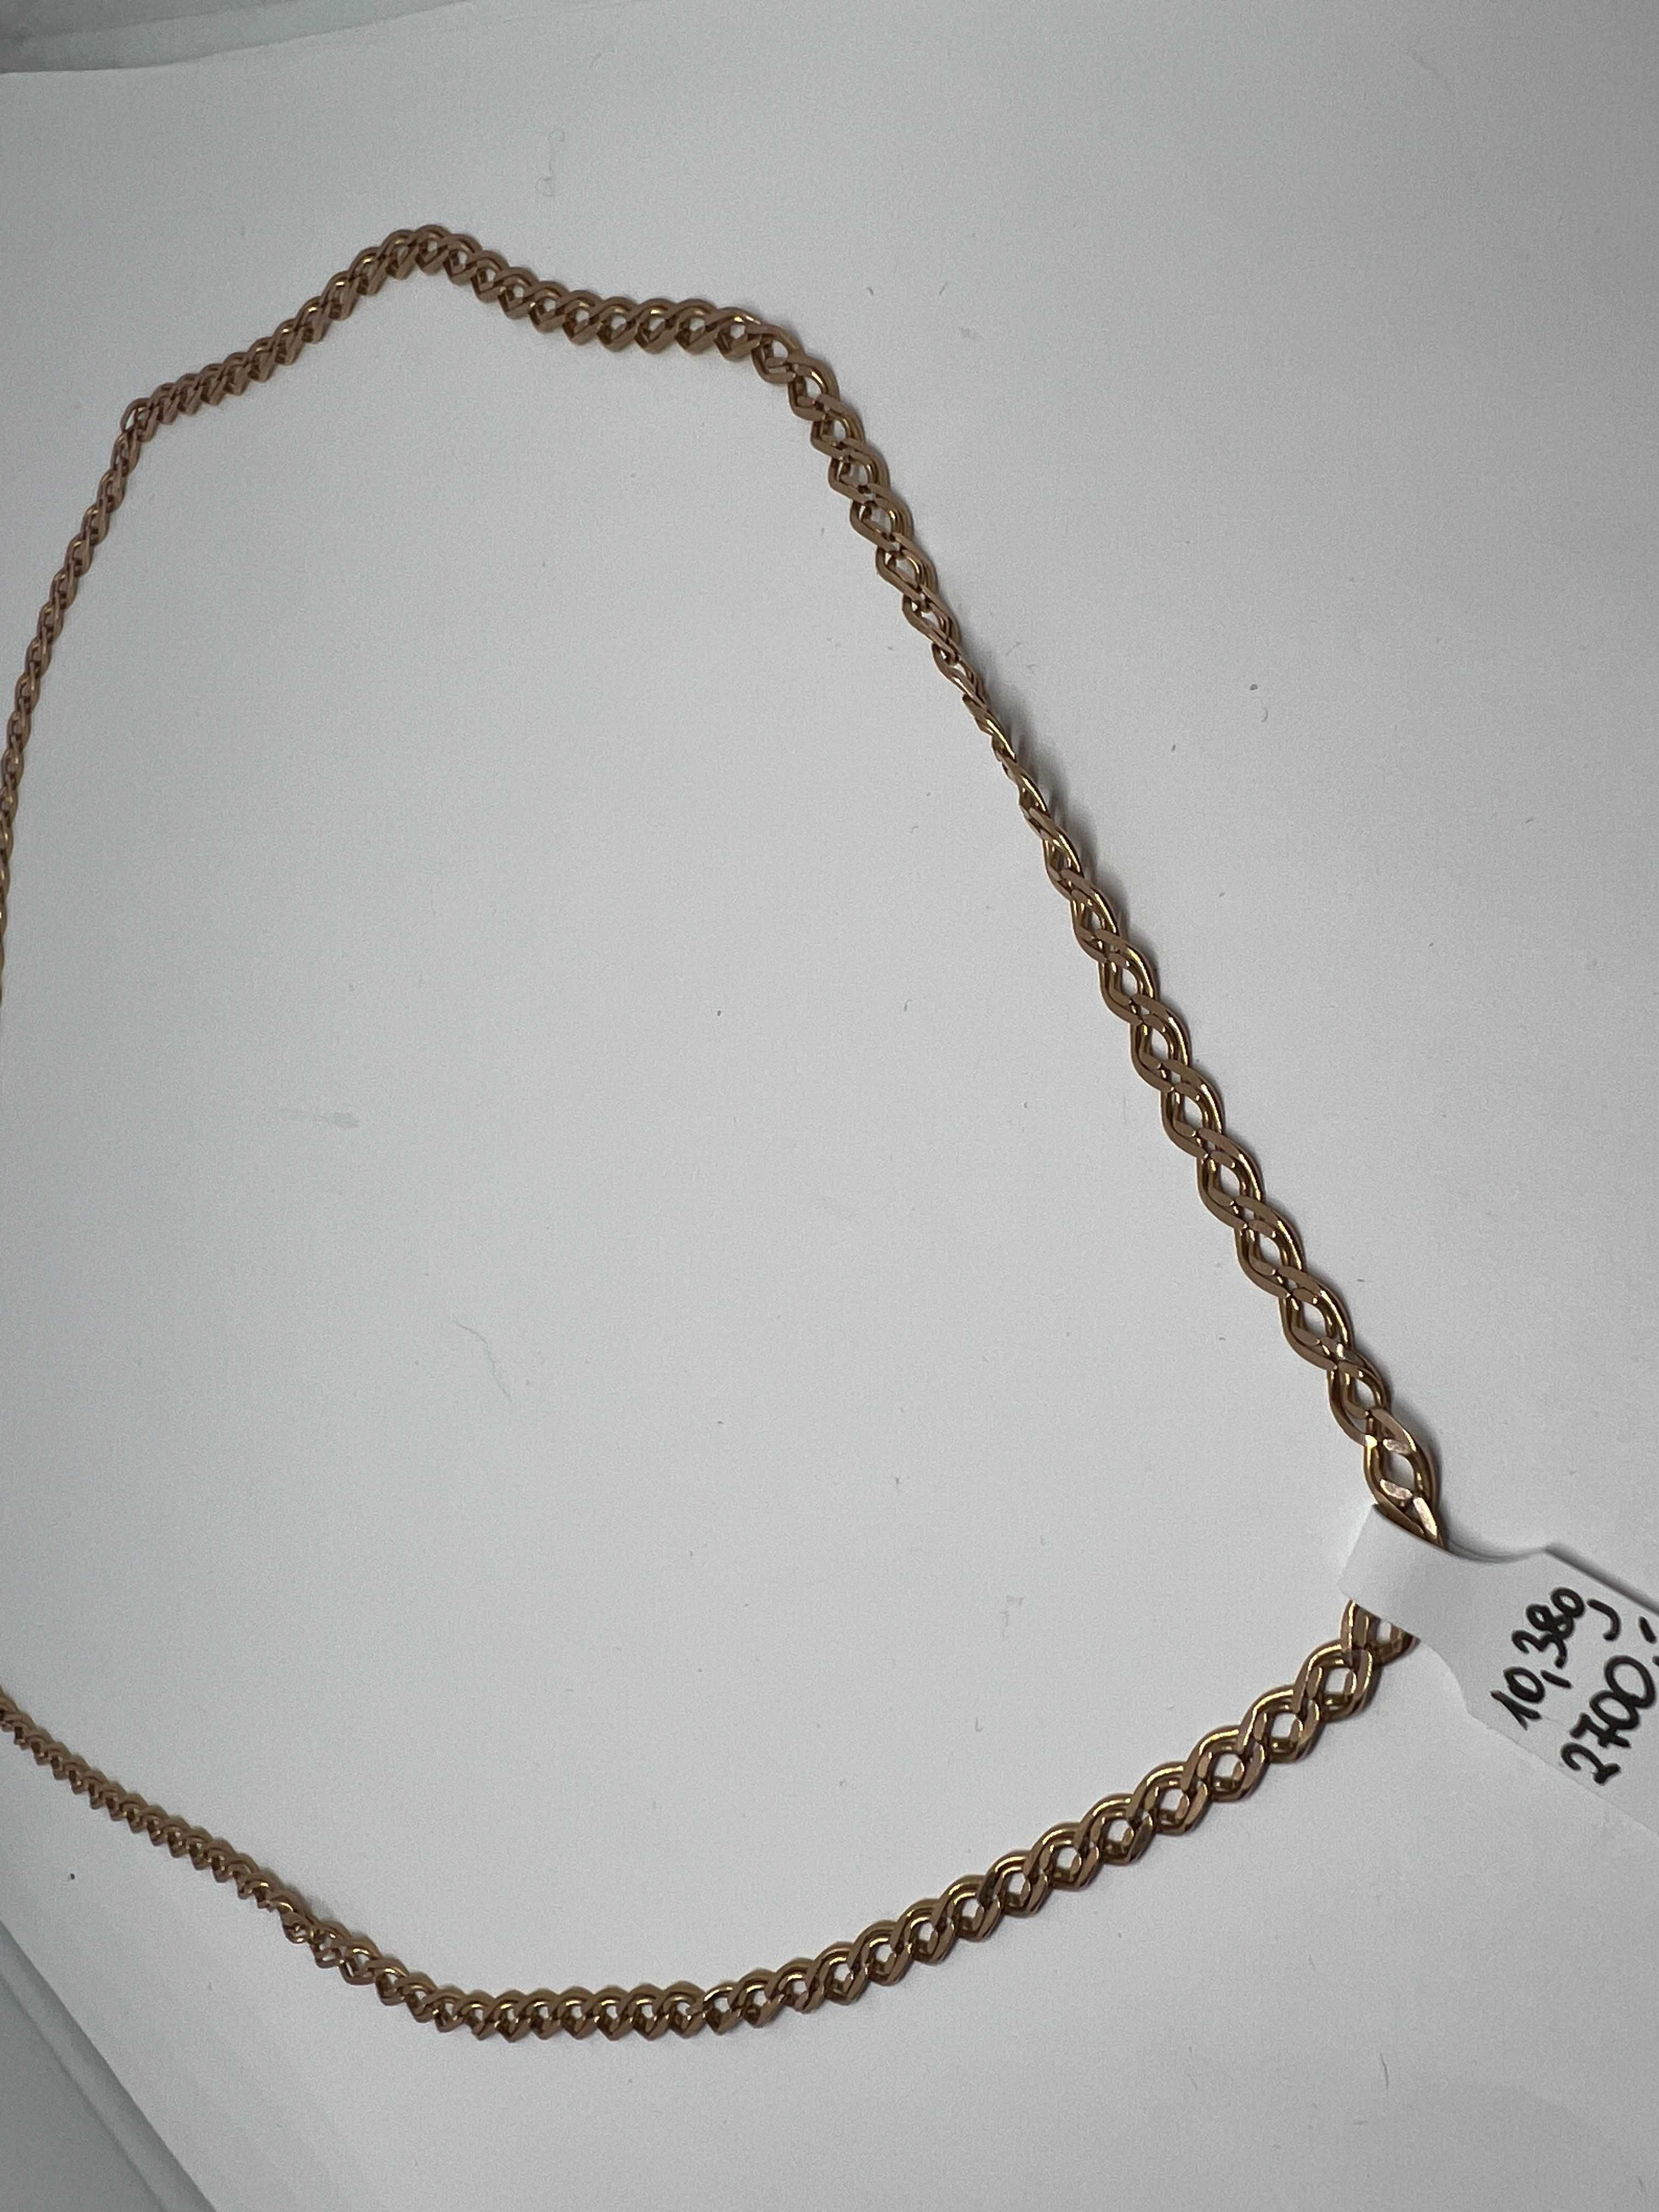 Łańcuszek Złoty Męski 10,38g 58cm P585 * Komis Madej Gorlice